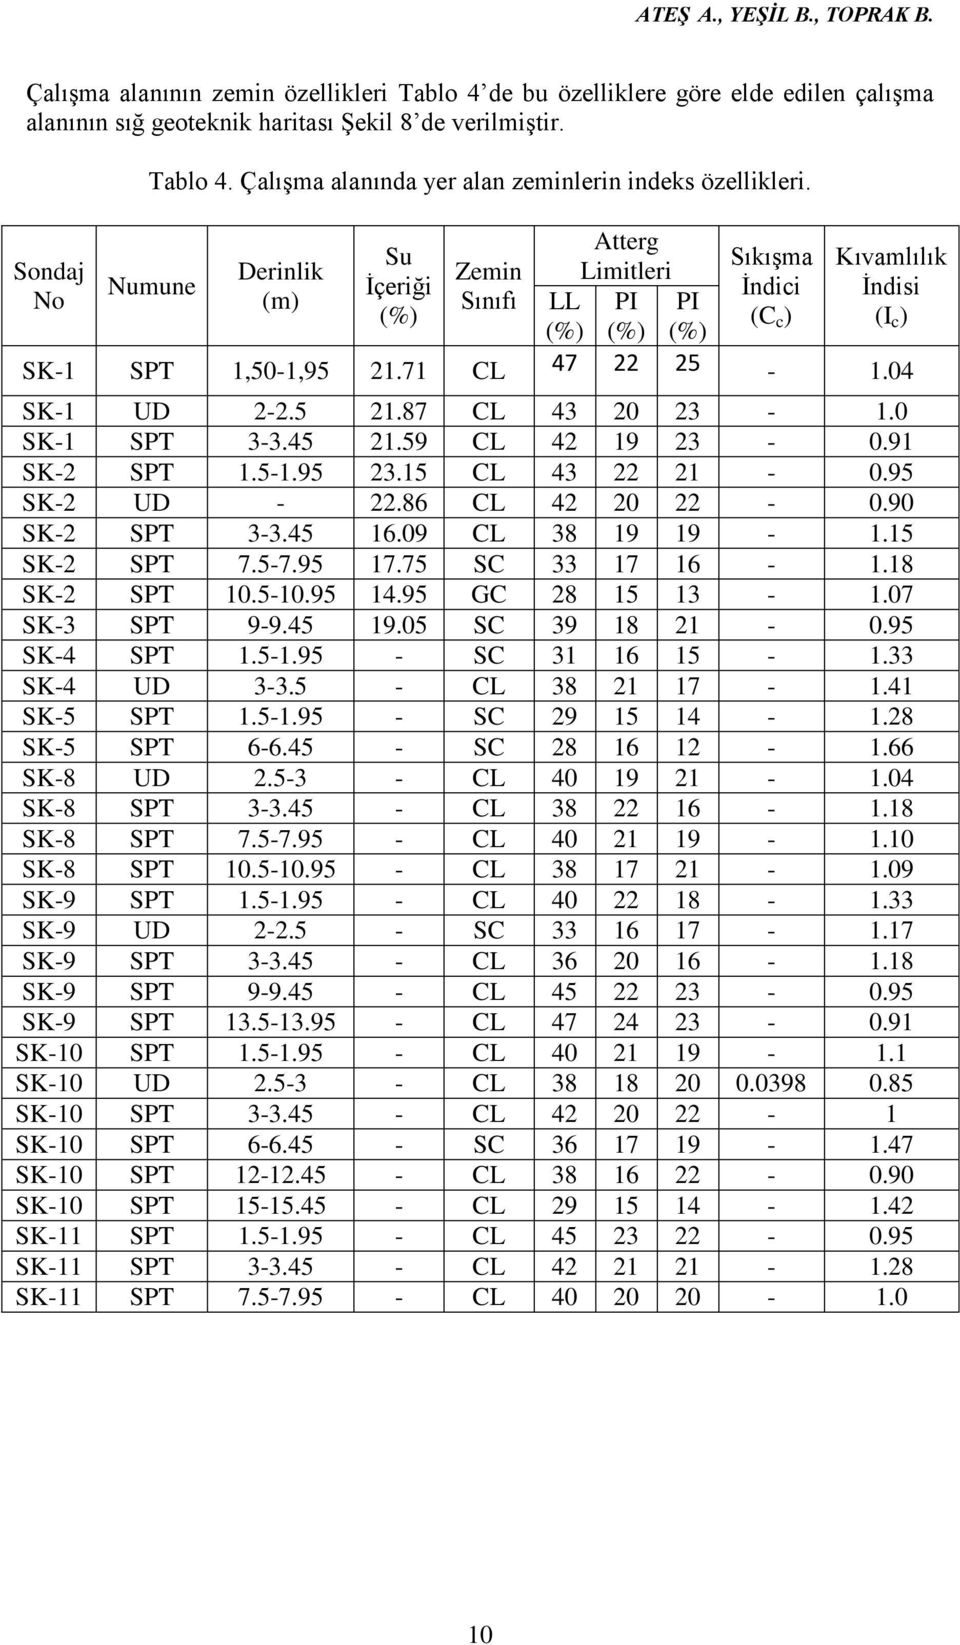 Numune Derinlik (m) Su İçeriği (%) Zemin Sınıfı LL (%) Atterg Limitleri PI (%) PI (%) Sıkışma İndici (C c ) Kıvamlılık İndisi (I c ) SK-1 SPT 1,50-1,95 21.71 CL 47 22 25-1.04 SK-1 UD 2-2.5 21.87 CL 43 20 23-1.